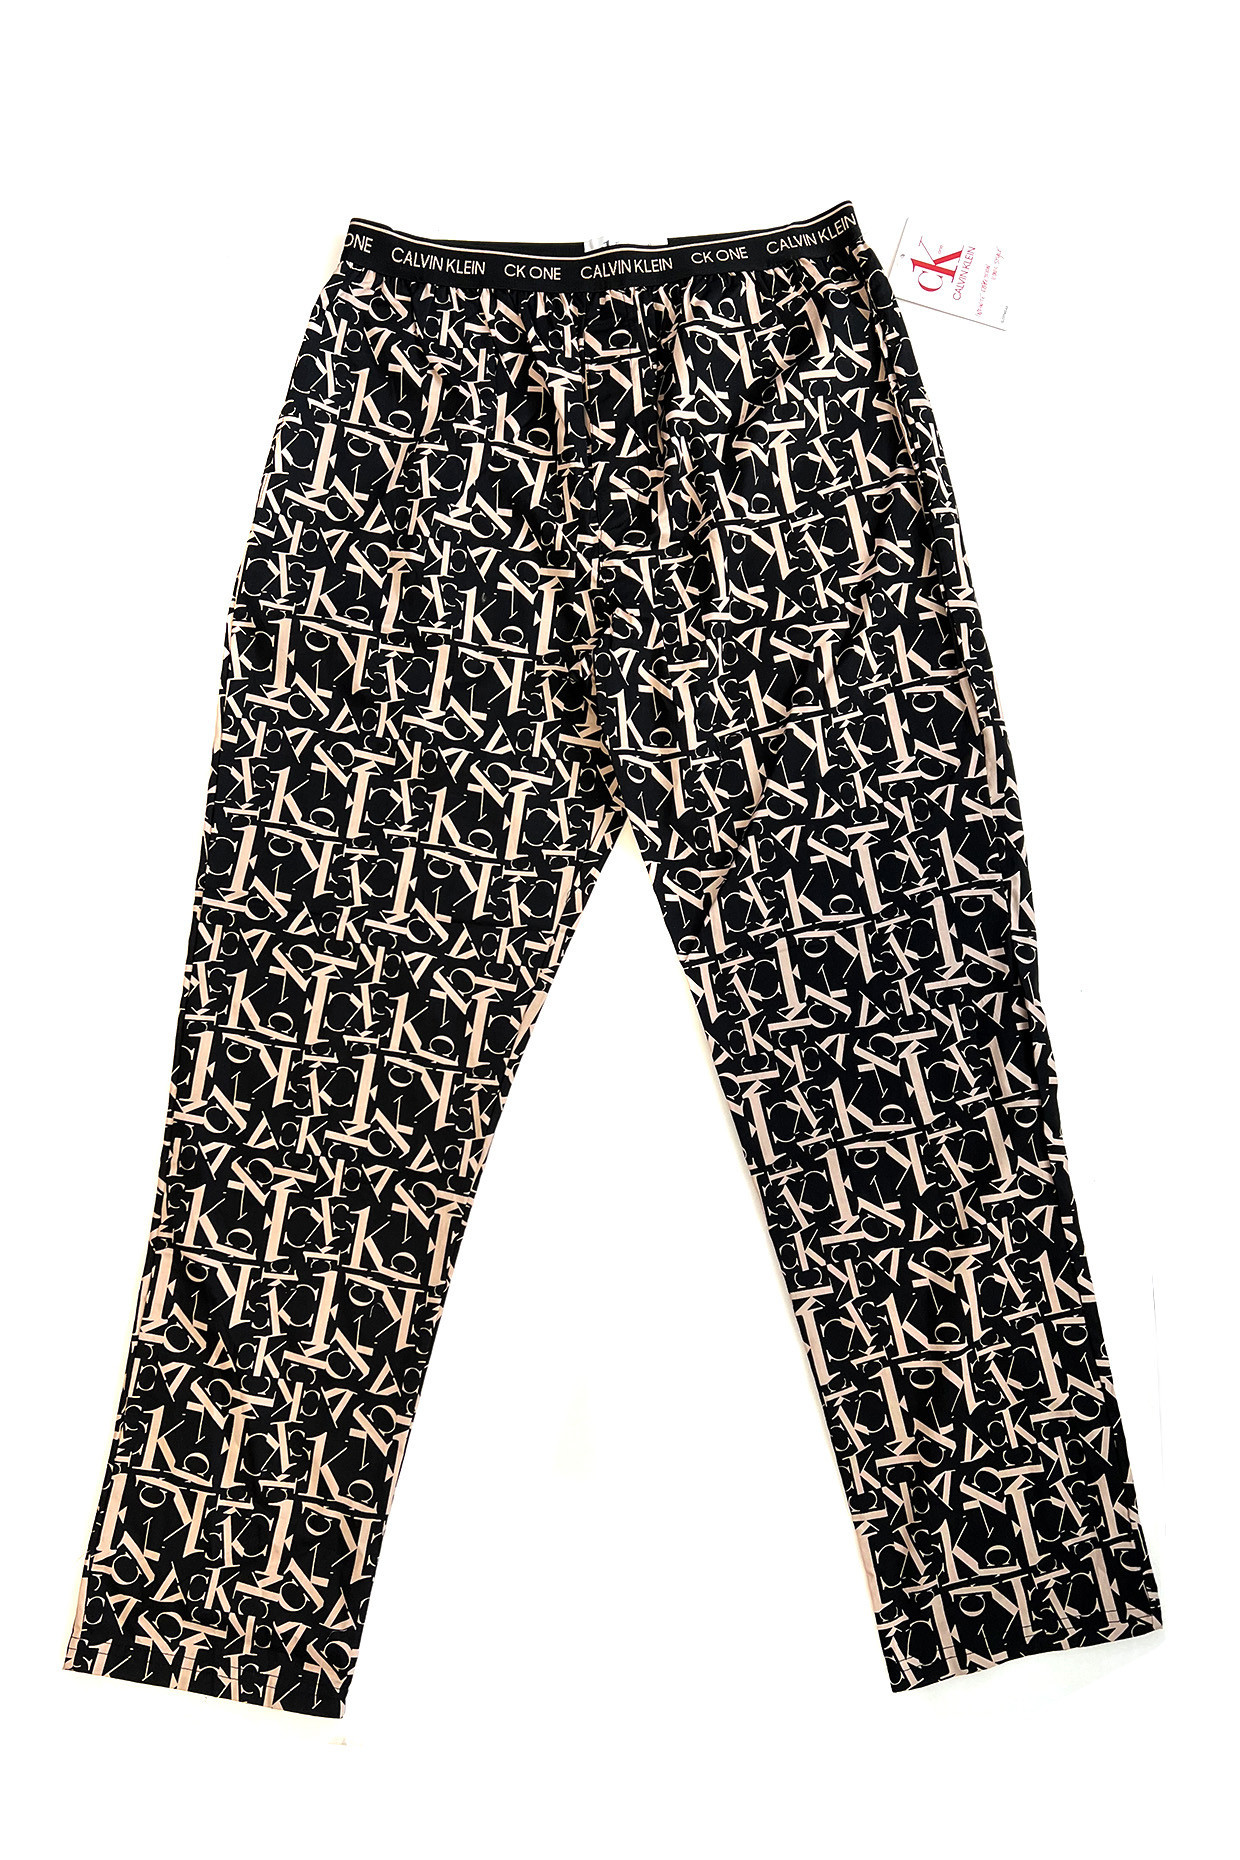 Pánské kalhoty na spaní NM1869E 1BF černo-béžové - Calvin Klein M černá s potiskem